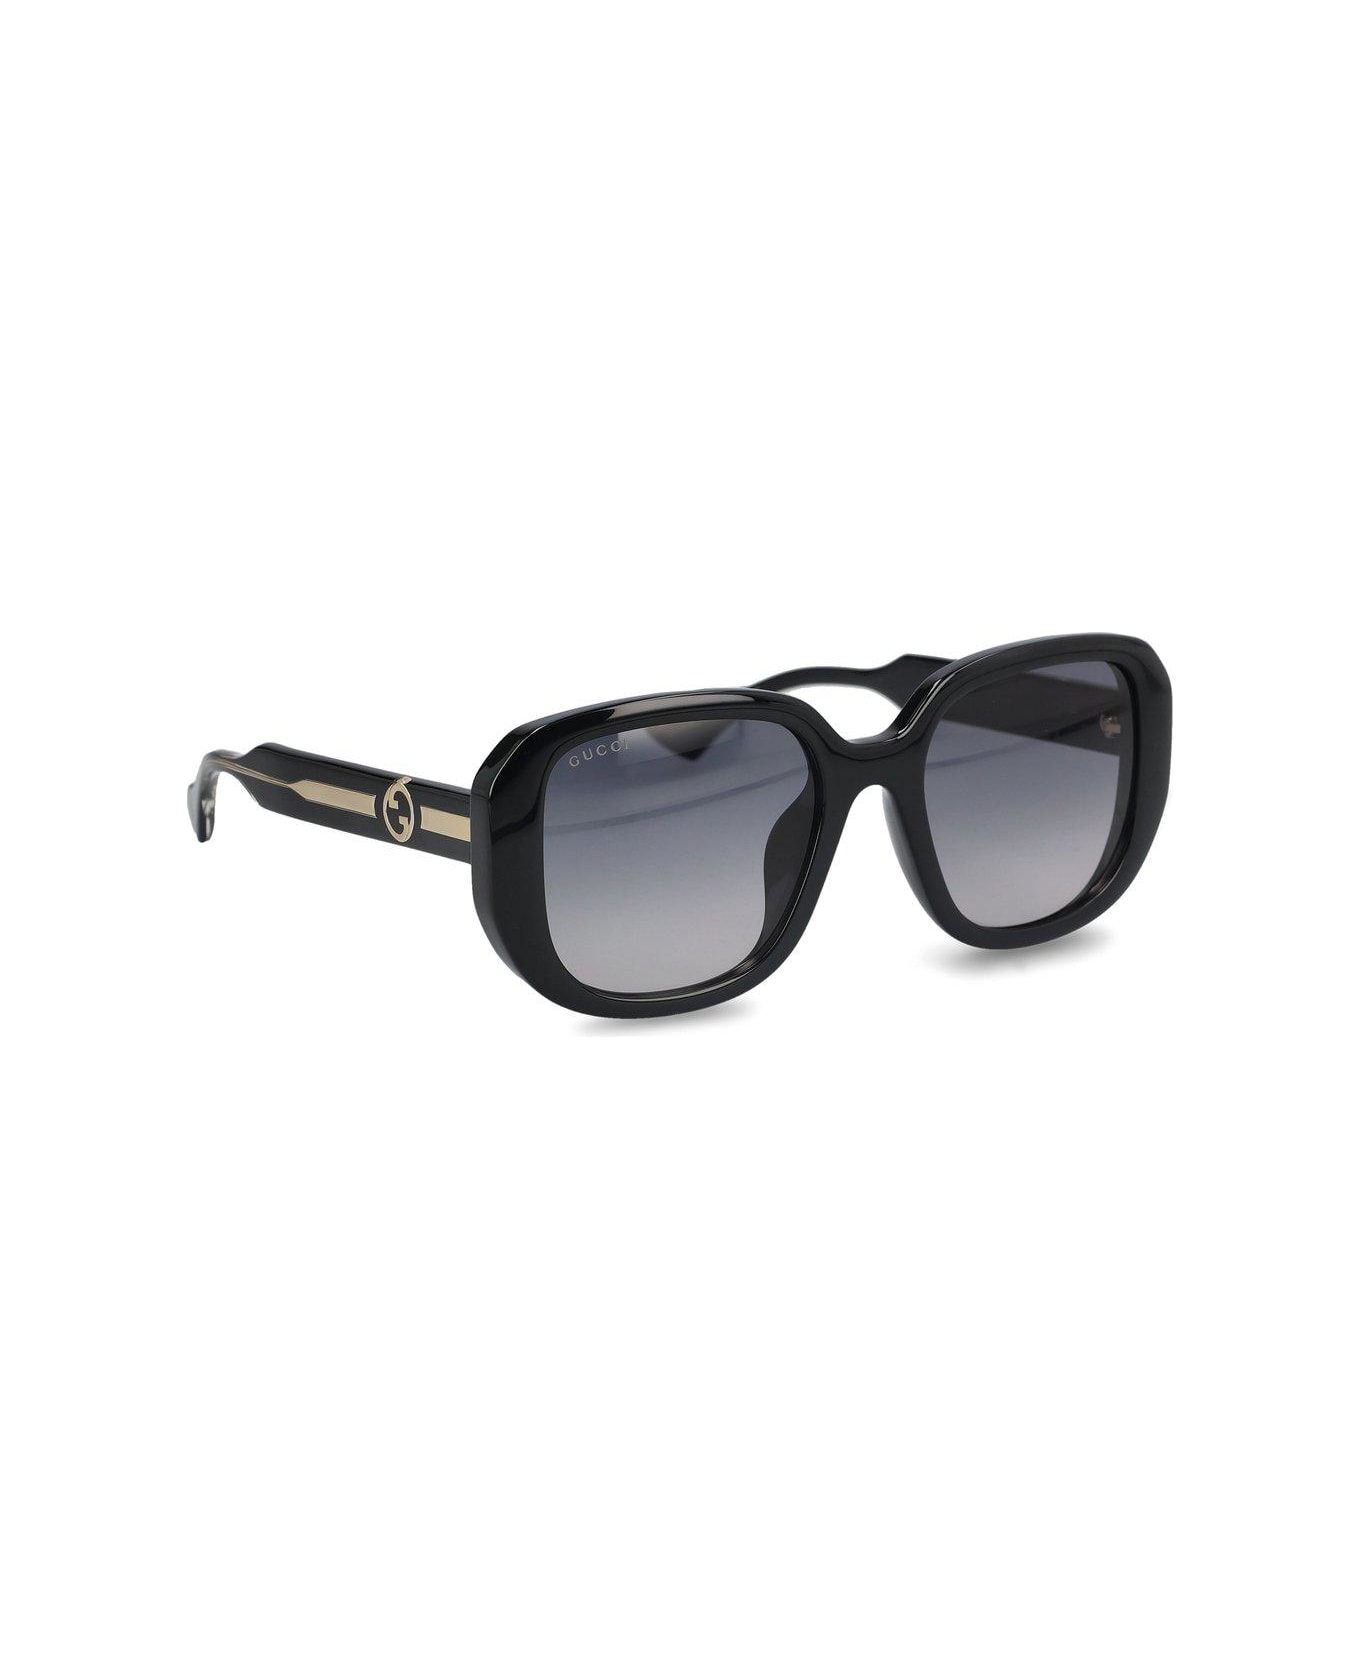 Gucci Eyewear Round Frame Sunglasses - Black Crystal Grey